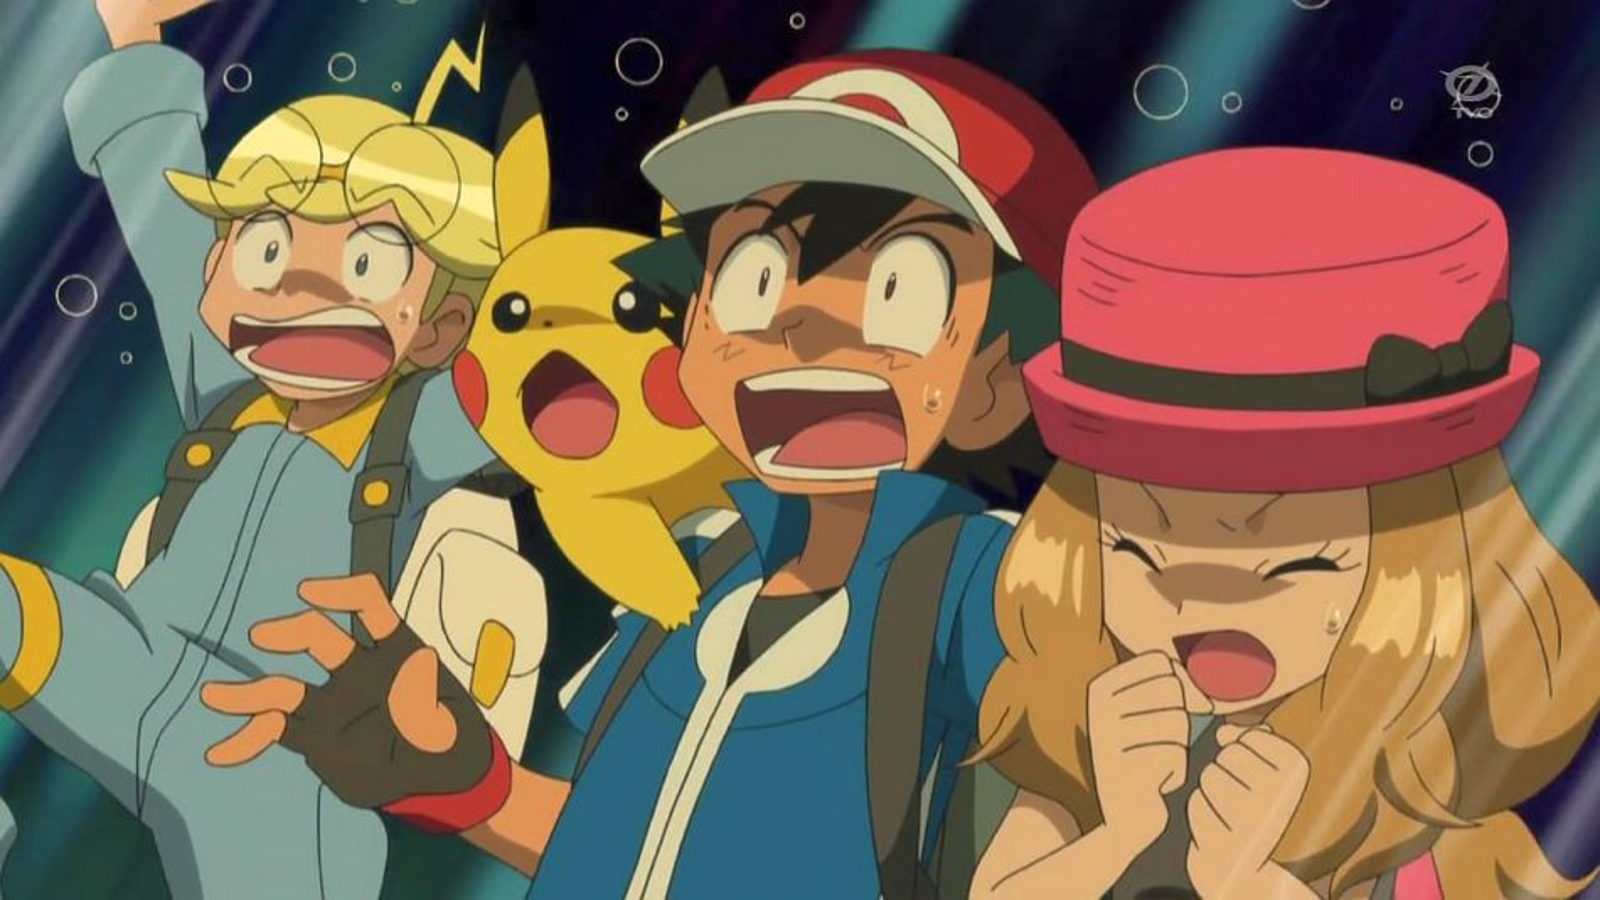 Pokémon GO launches on US App Store